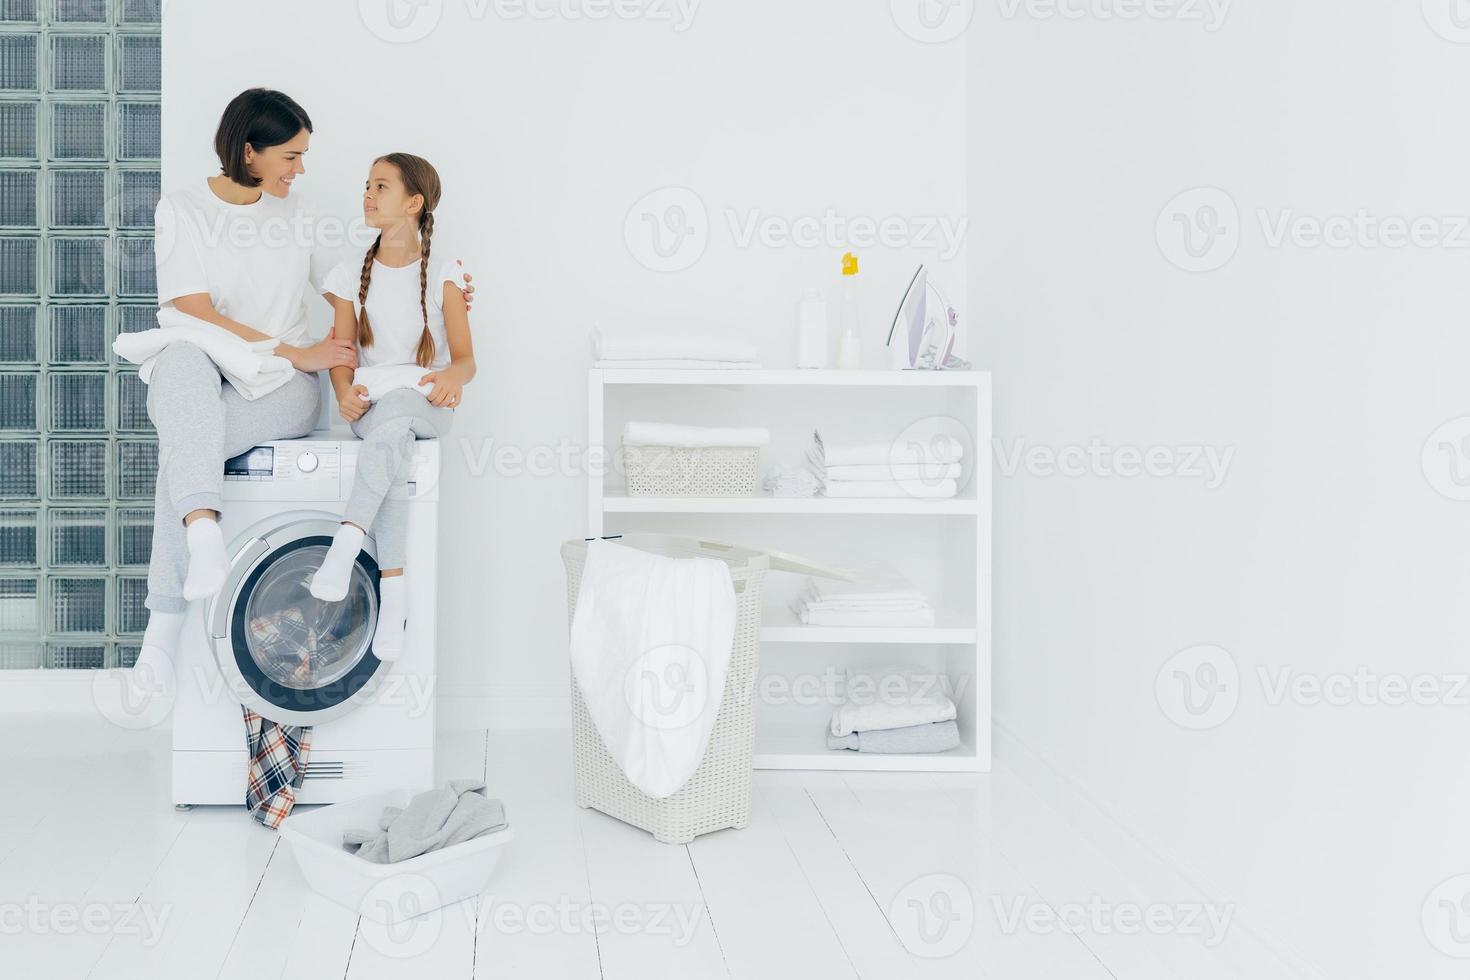 la donna felice e premurosa abbraccia la sua piccola figlia, si siede sulla lavatrice, riposa dopo il lavaggio, circondata da cesto e vestiti sporchi, conversa piacevolmente tra loro. lavori di casa foto